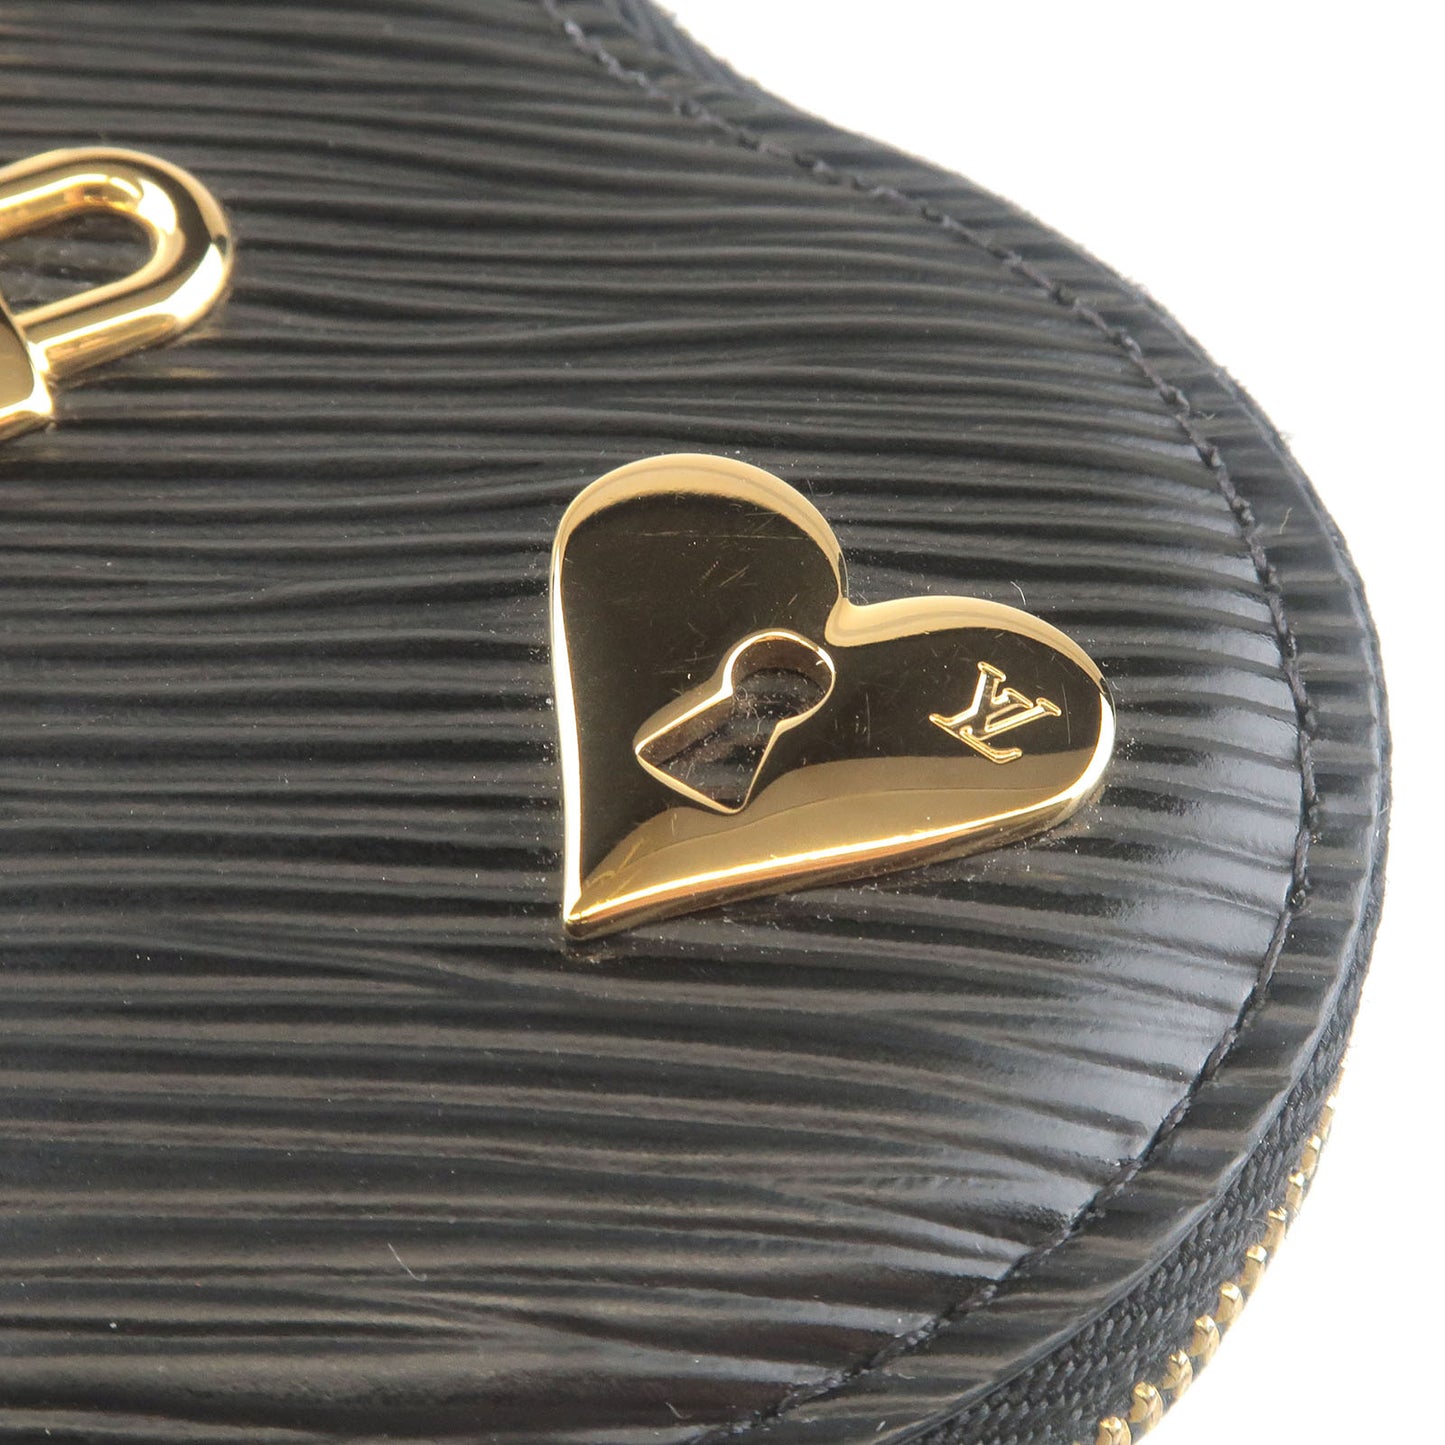 Louis Vuitton Epi Love Lock Porte Monnaie Coeur Coin Case M63995